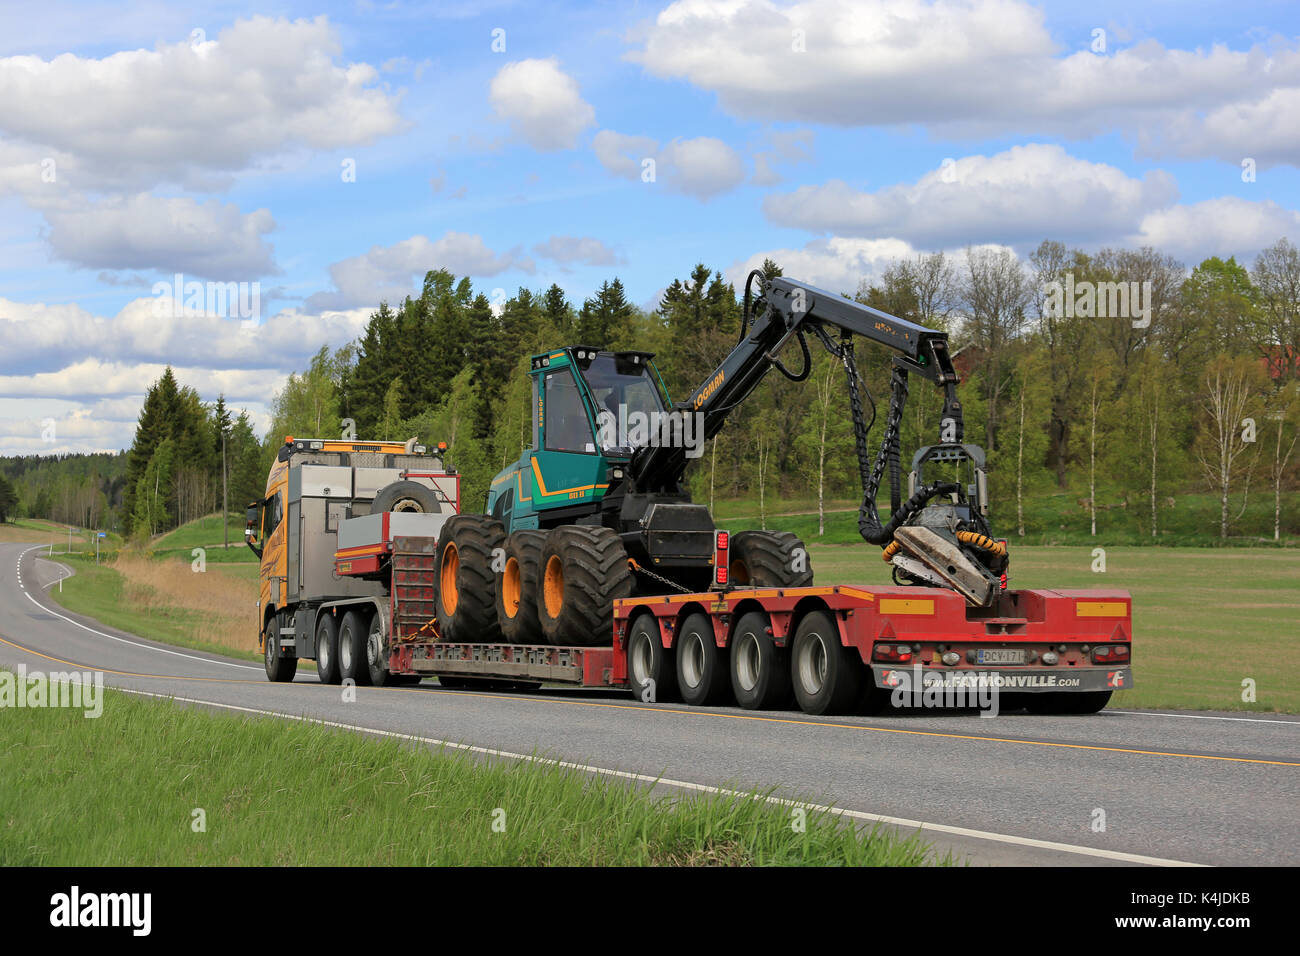 Salo, Finlande - le 25 mai 2017 : Volvo fh jaune de kosken autokeskus logman transporte 811h forest récolteuse sur remorque col de cygne, le long de la route sur un bea Banque D'Images